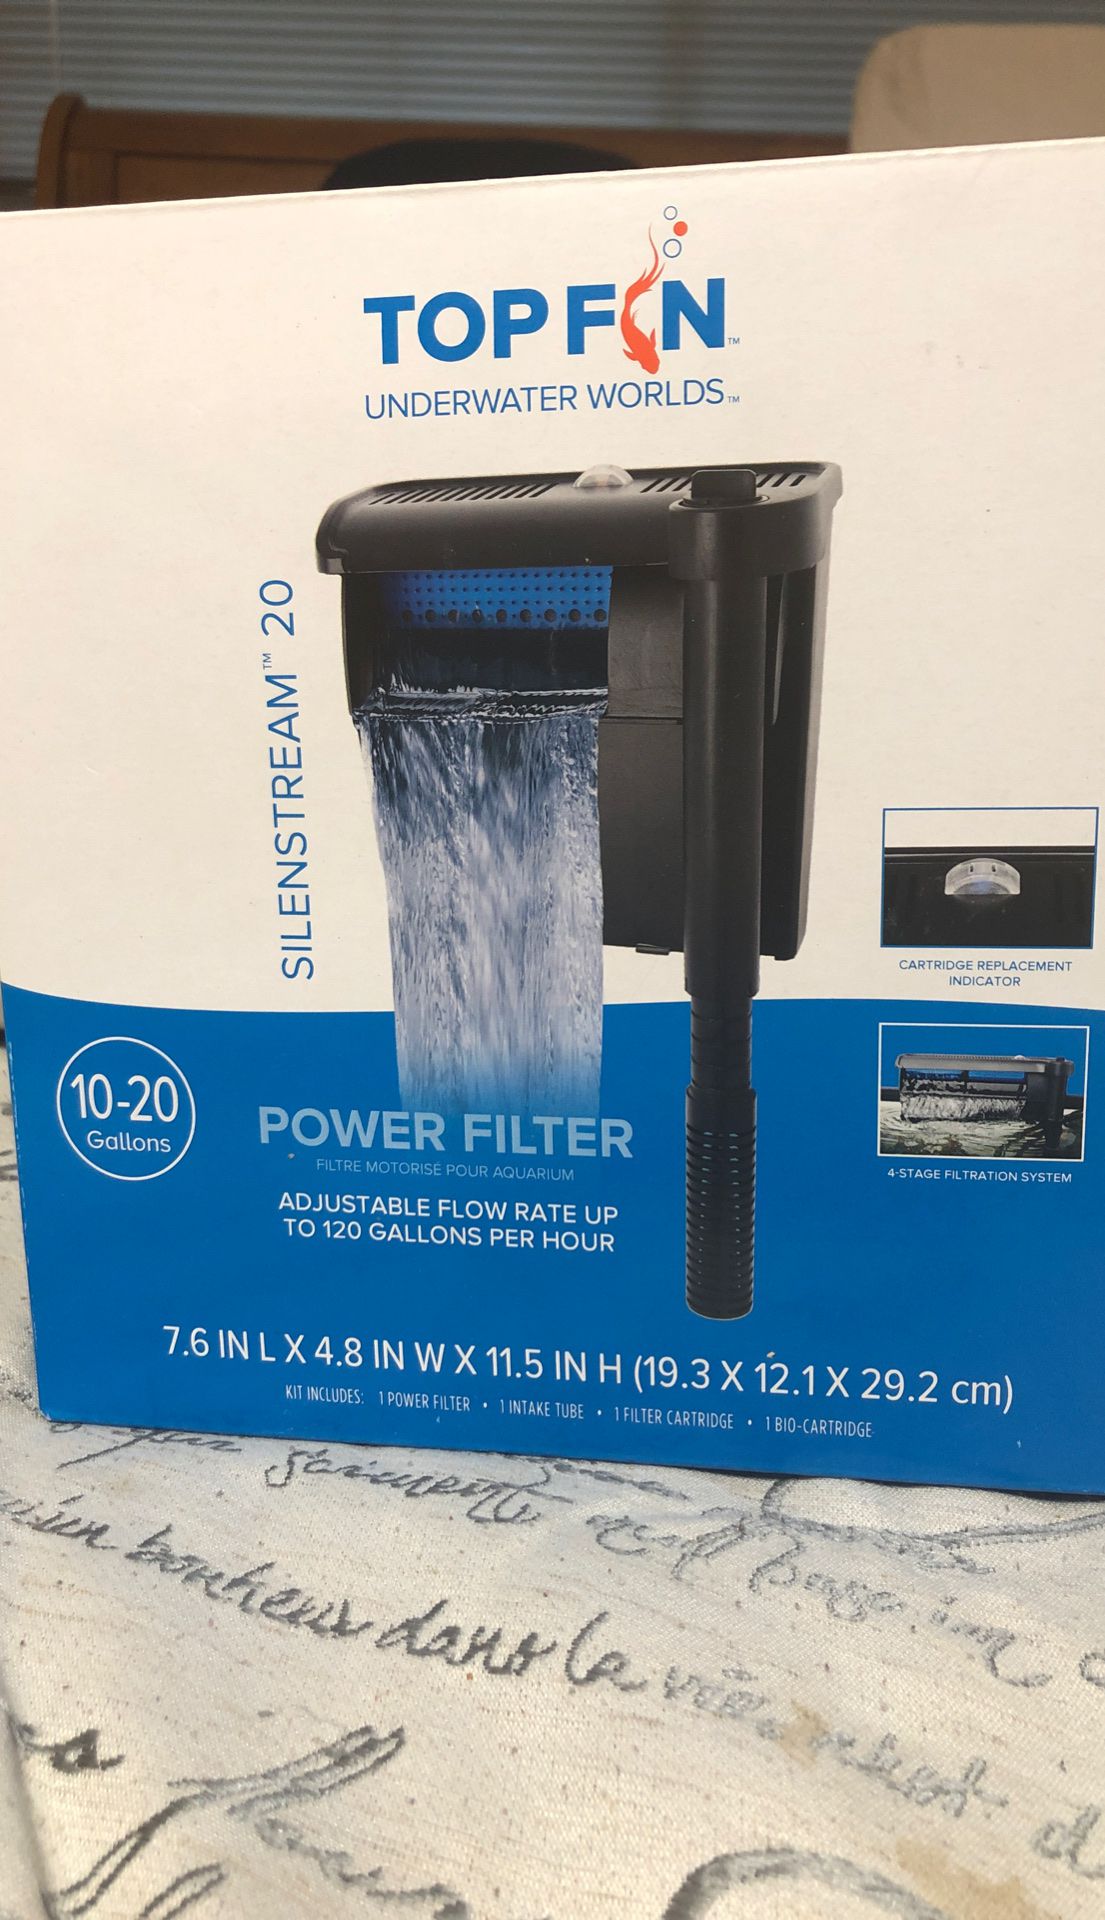 Top Fin Power Filter